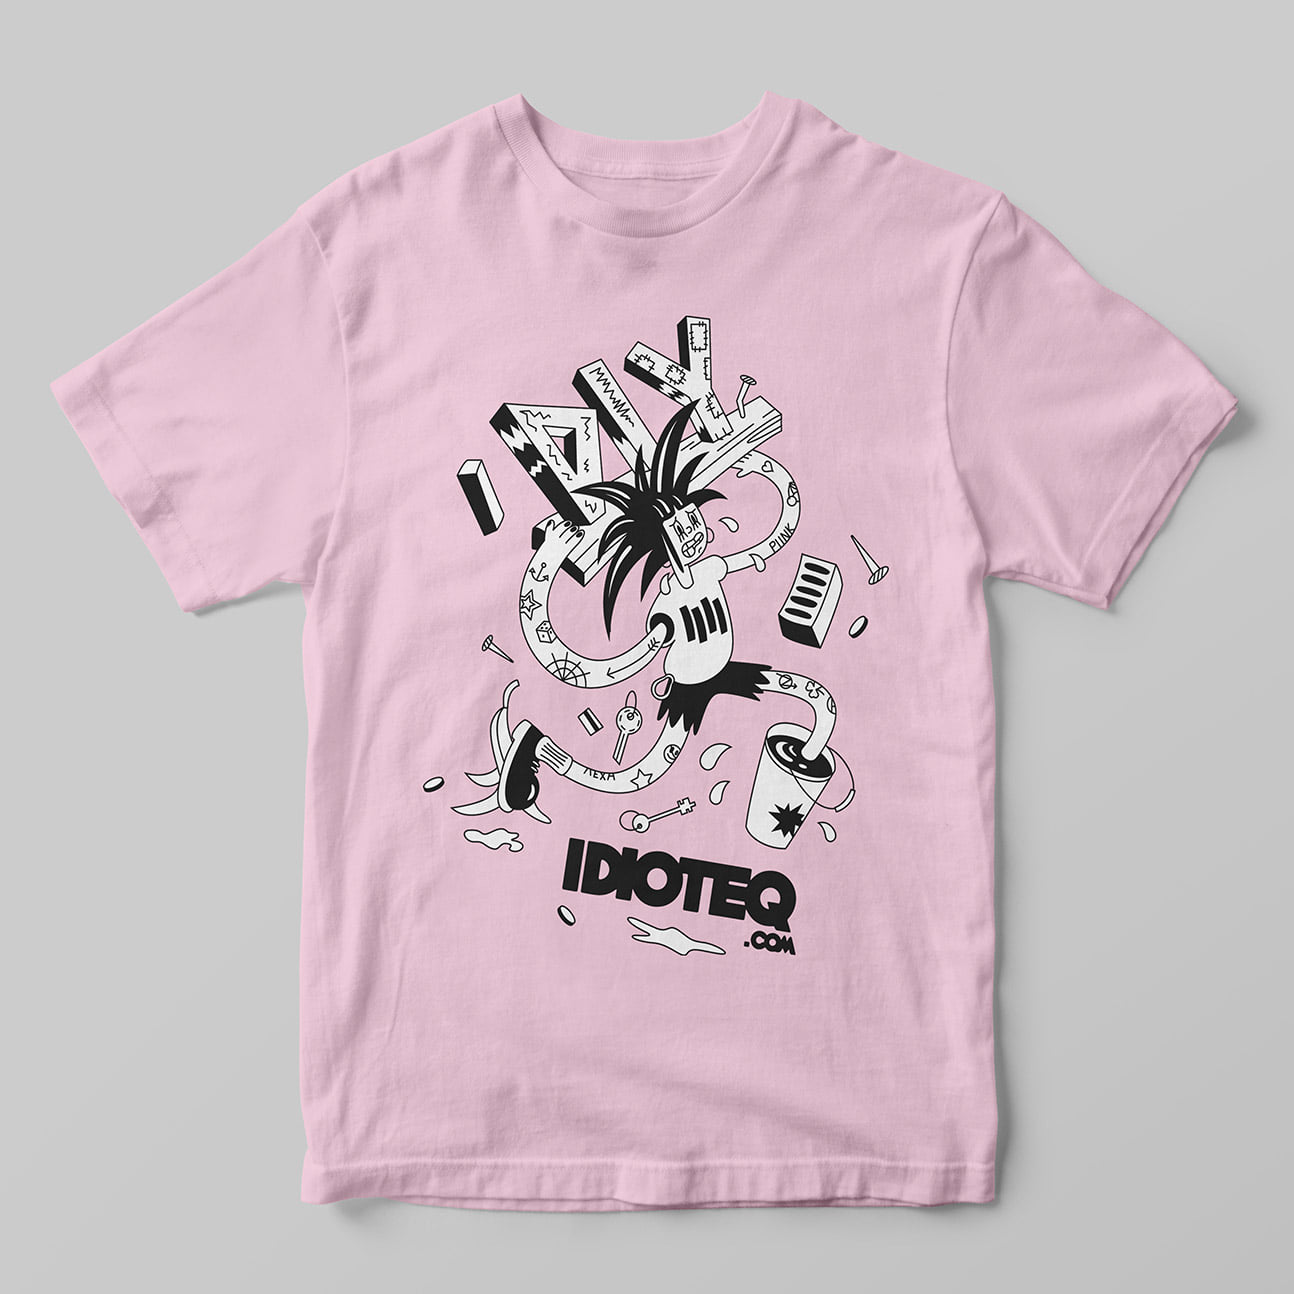 IDIOTEQ.com t shirts 2 min